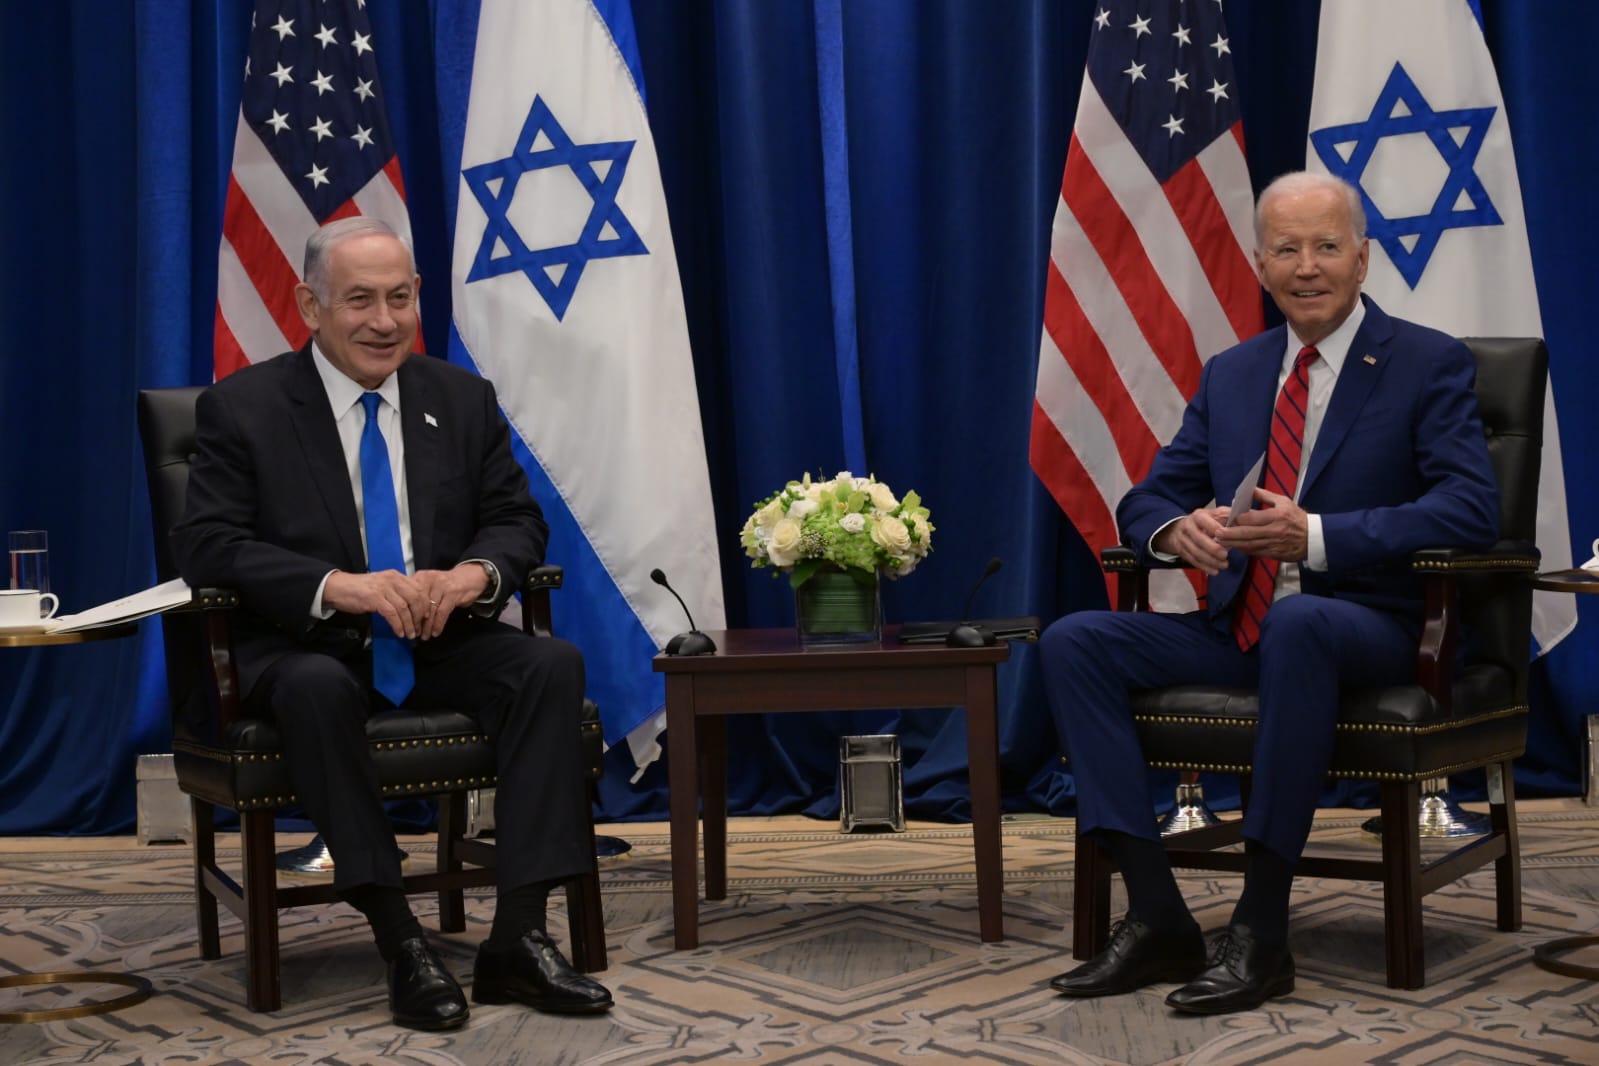 Netanyahu afirma: "Nada nos deterá" - Israel prepara incursão em Rafah, desafiando os EUA